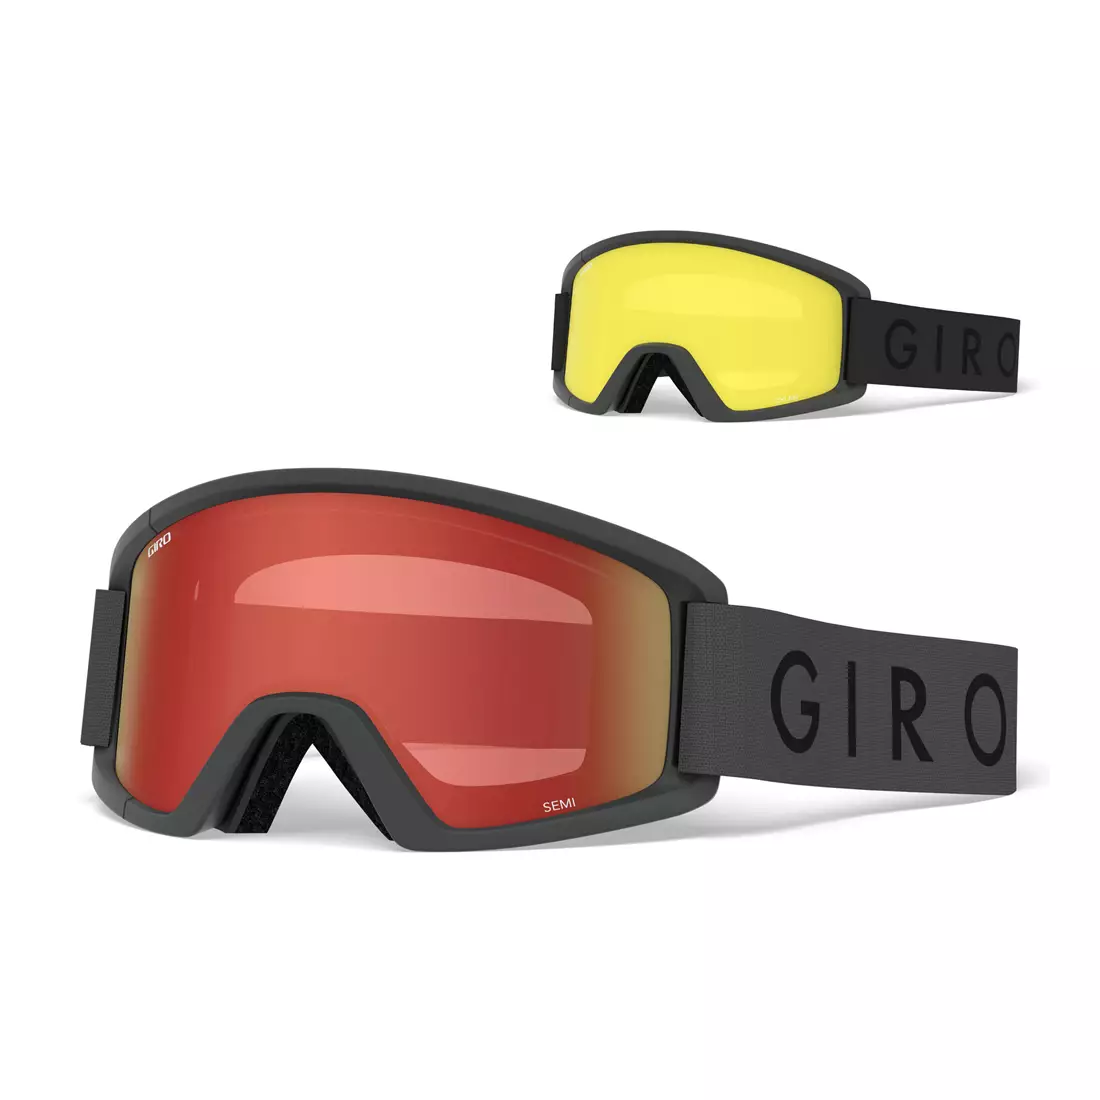 Lyžiarske / snowboardové okuliare GIRO SEMI GREY CORE GR-7102611